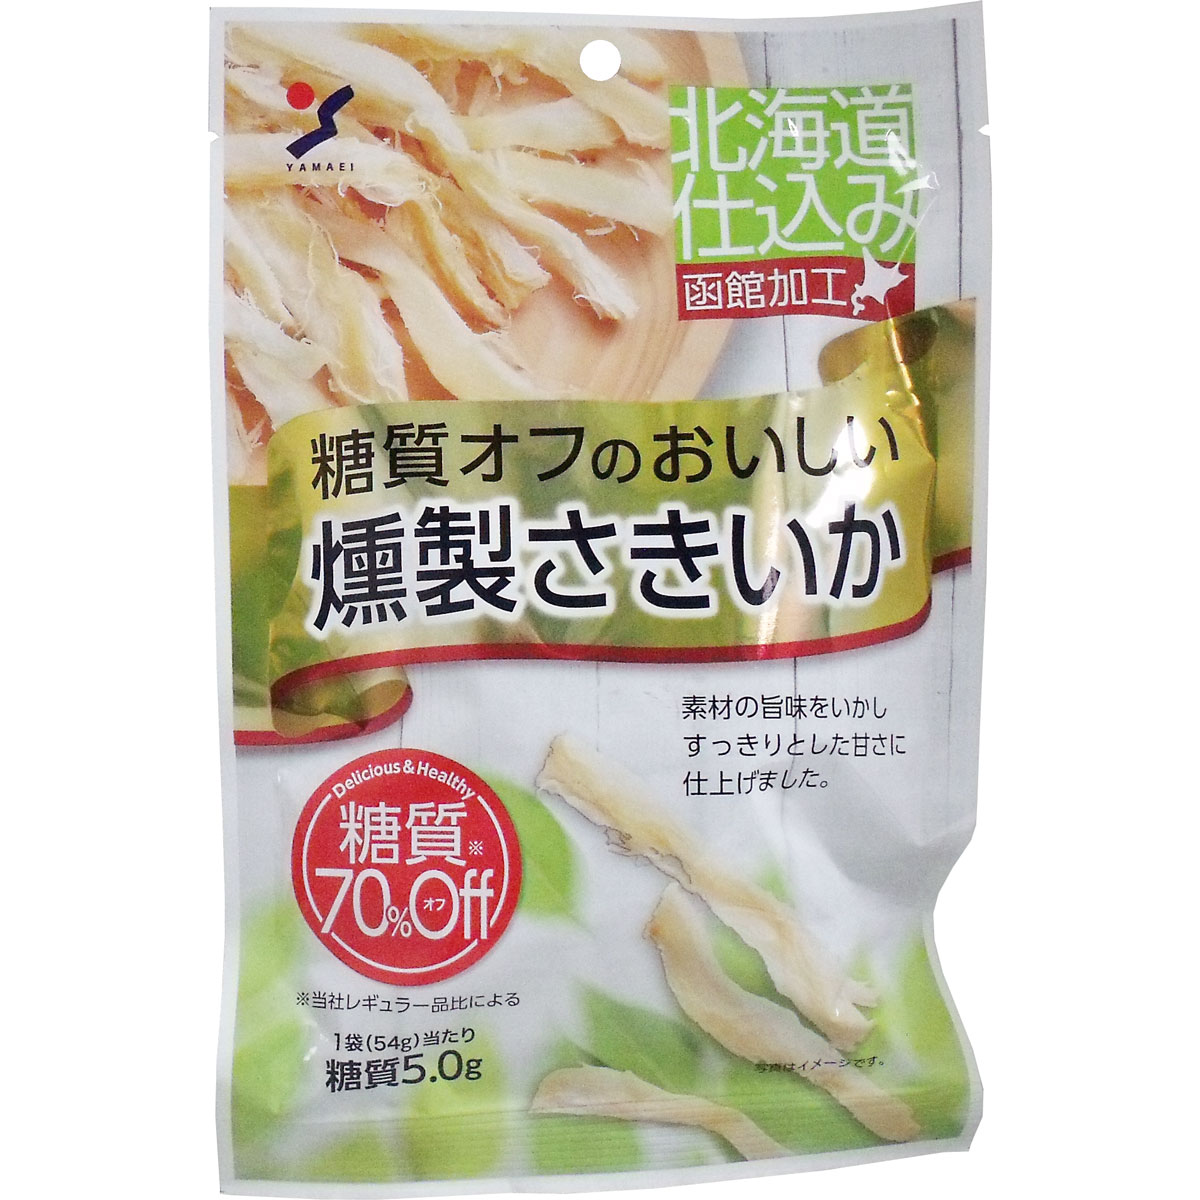 Yamai食品行業 山榮食品工業 低糖質美味煙燻魷魚 54g